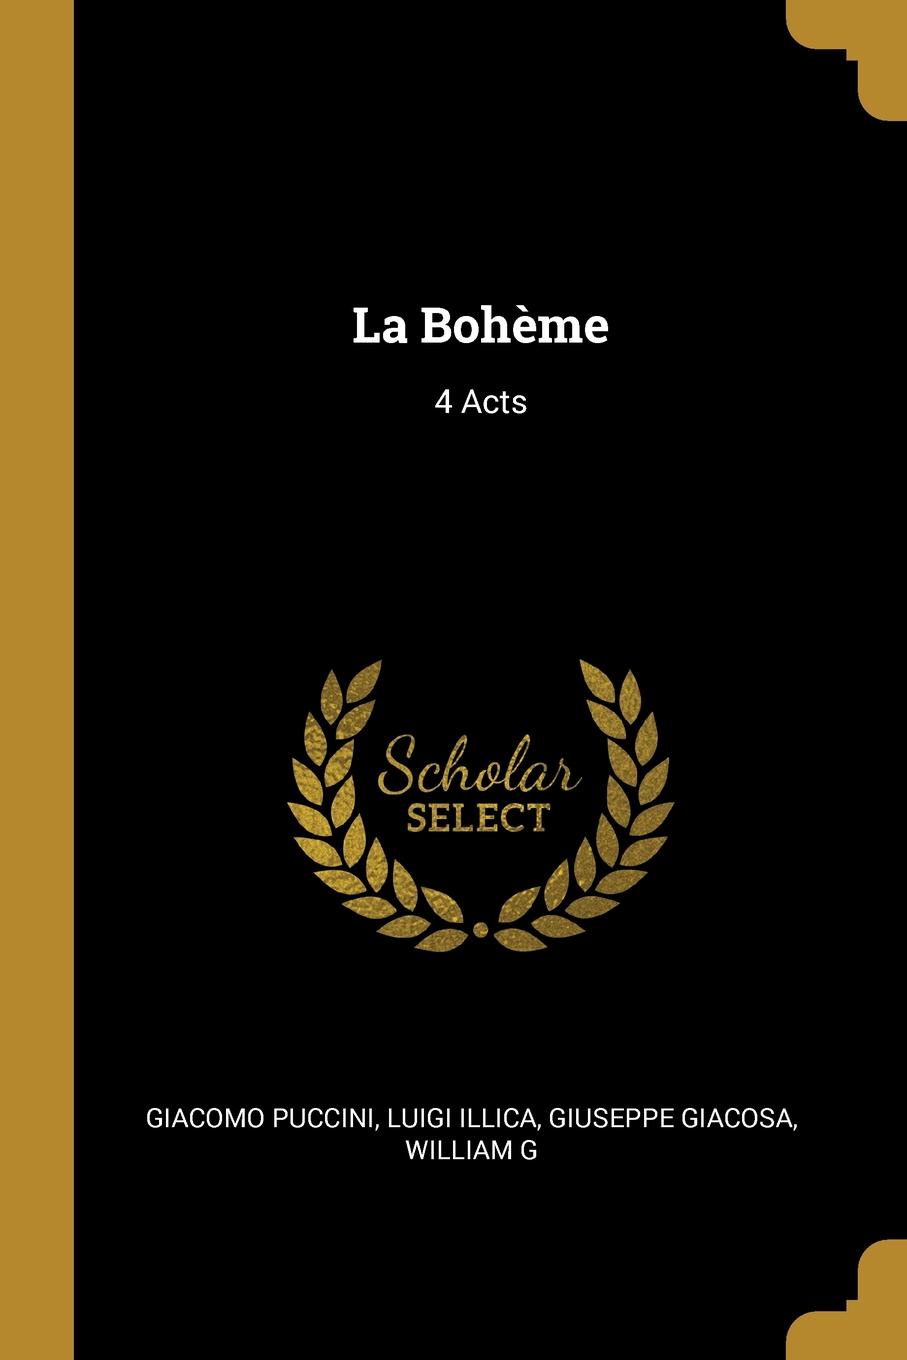 La Boheme. 4 Acts